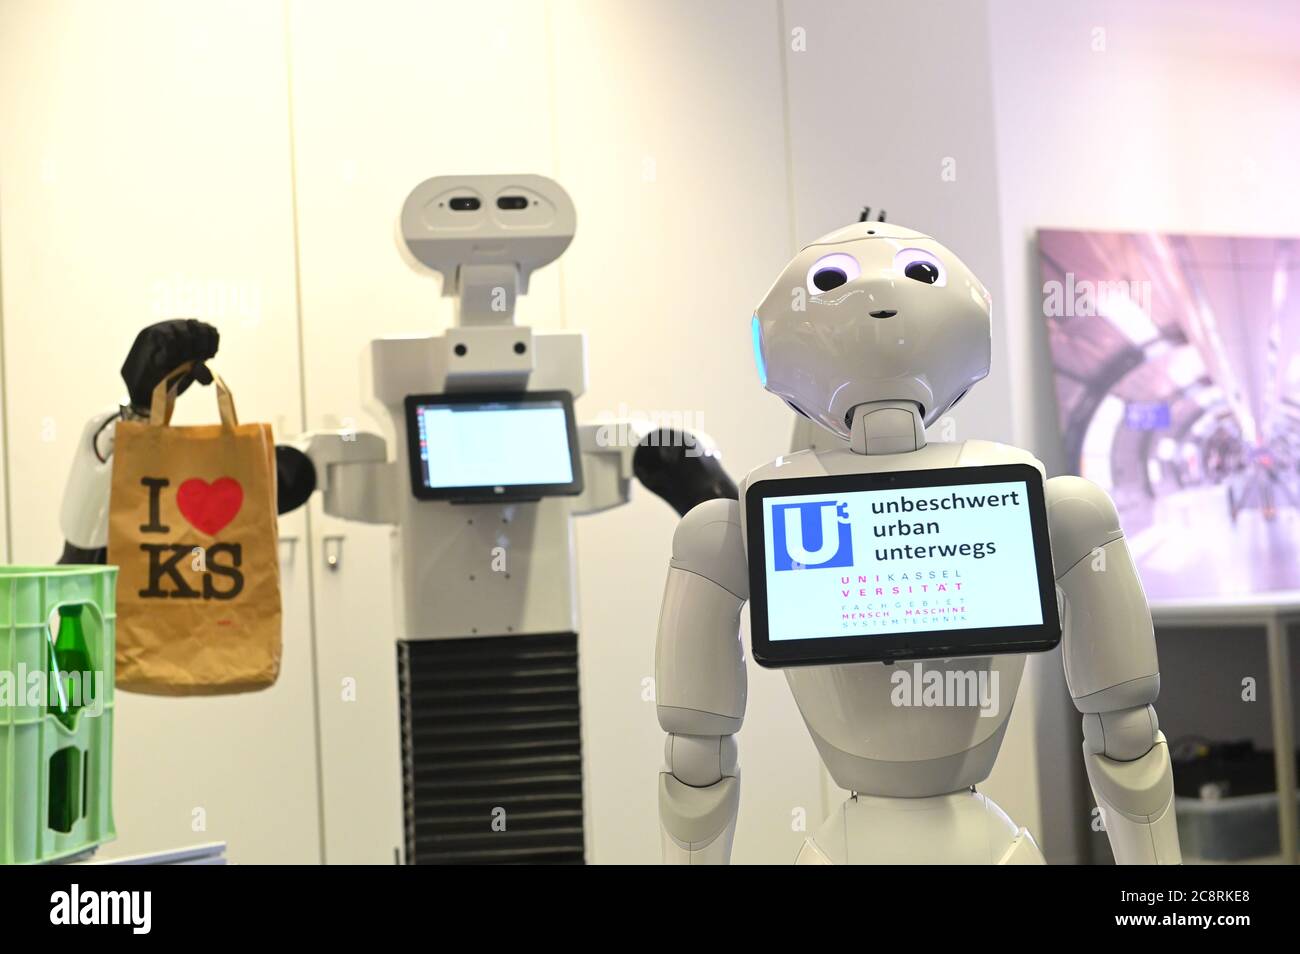 Kassel, Alemania. 14 de julio de 2020. Robot Pepper (r) se encuentra  delante de un robot de transporte con una bolsa en su mano. Los robots  forman parte del proyecto de investigación